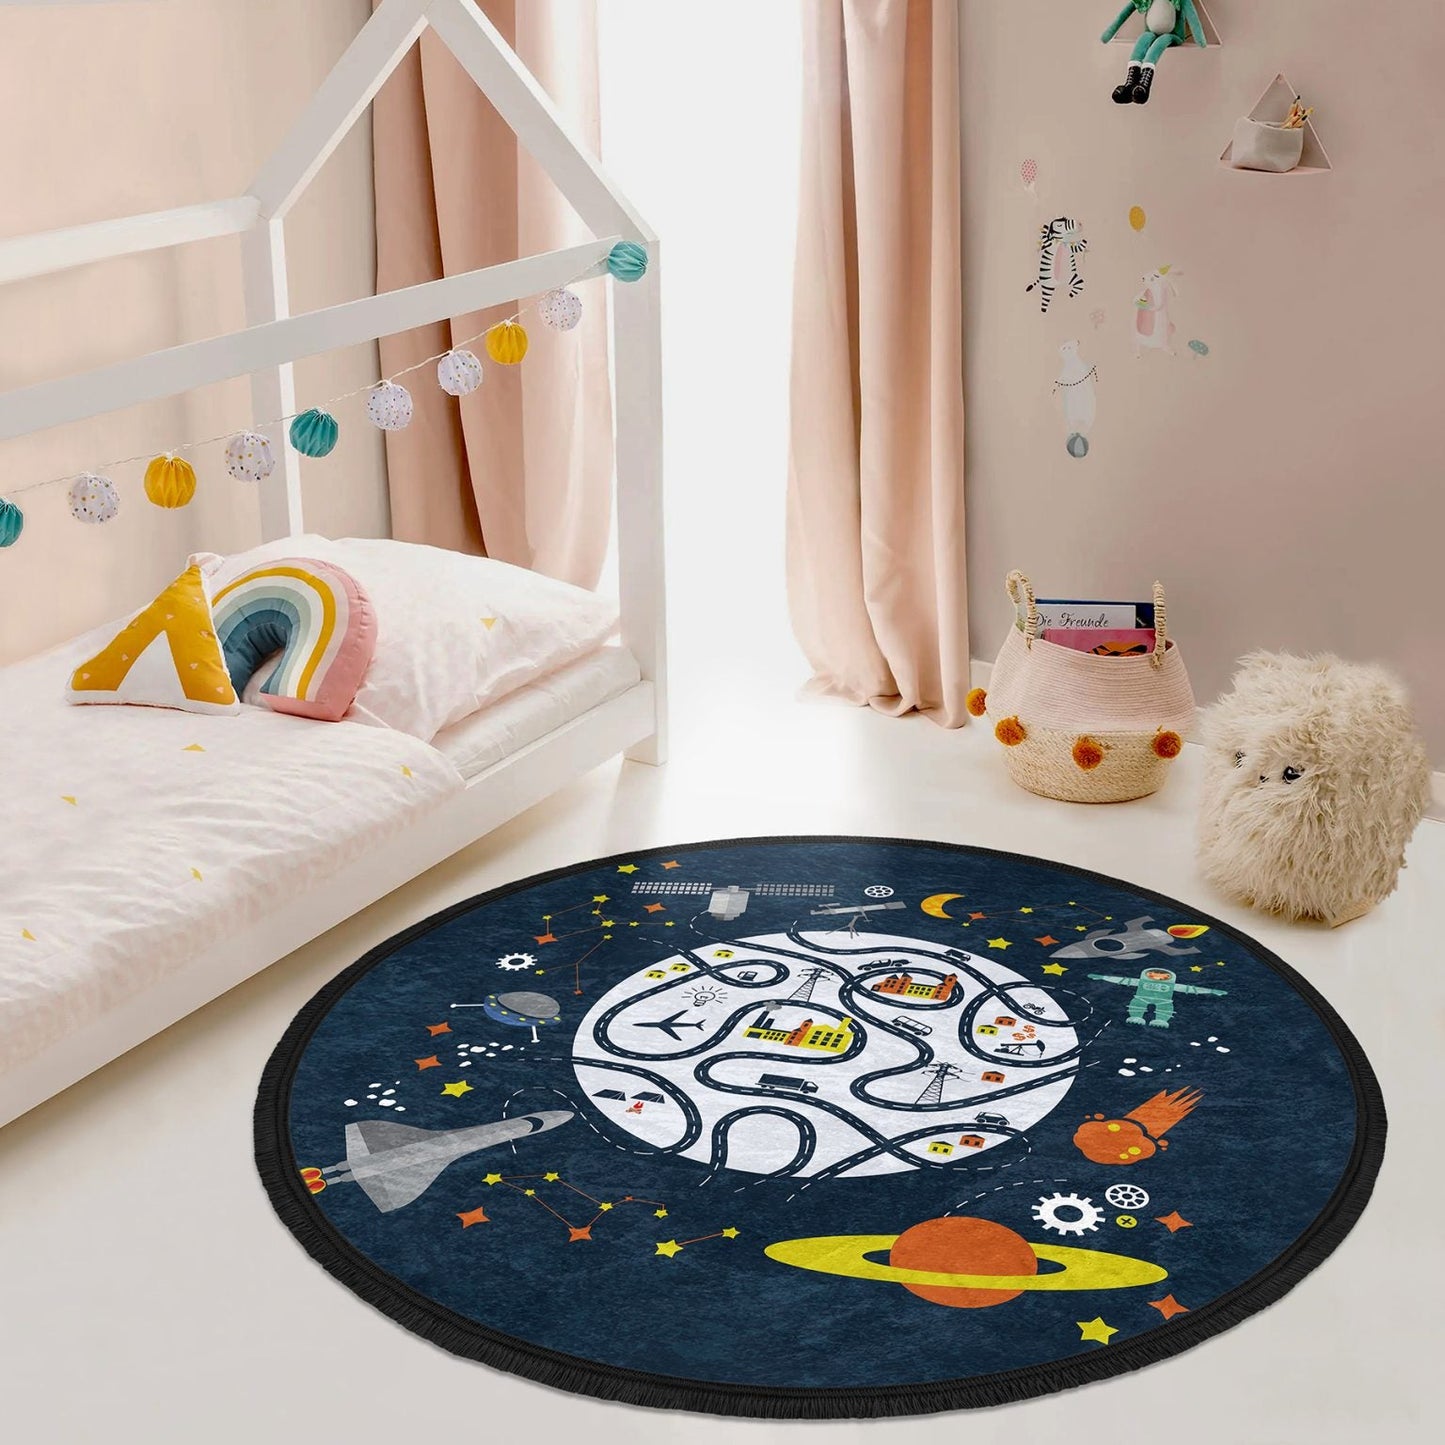 Kids Room Universe Printed Round Rug, Nursery Room Round Rug, Baby